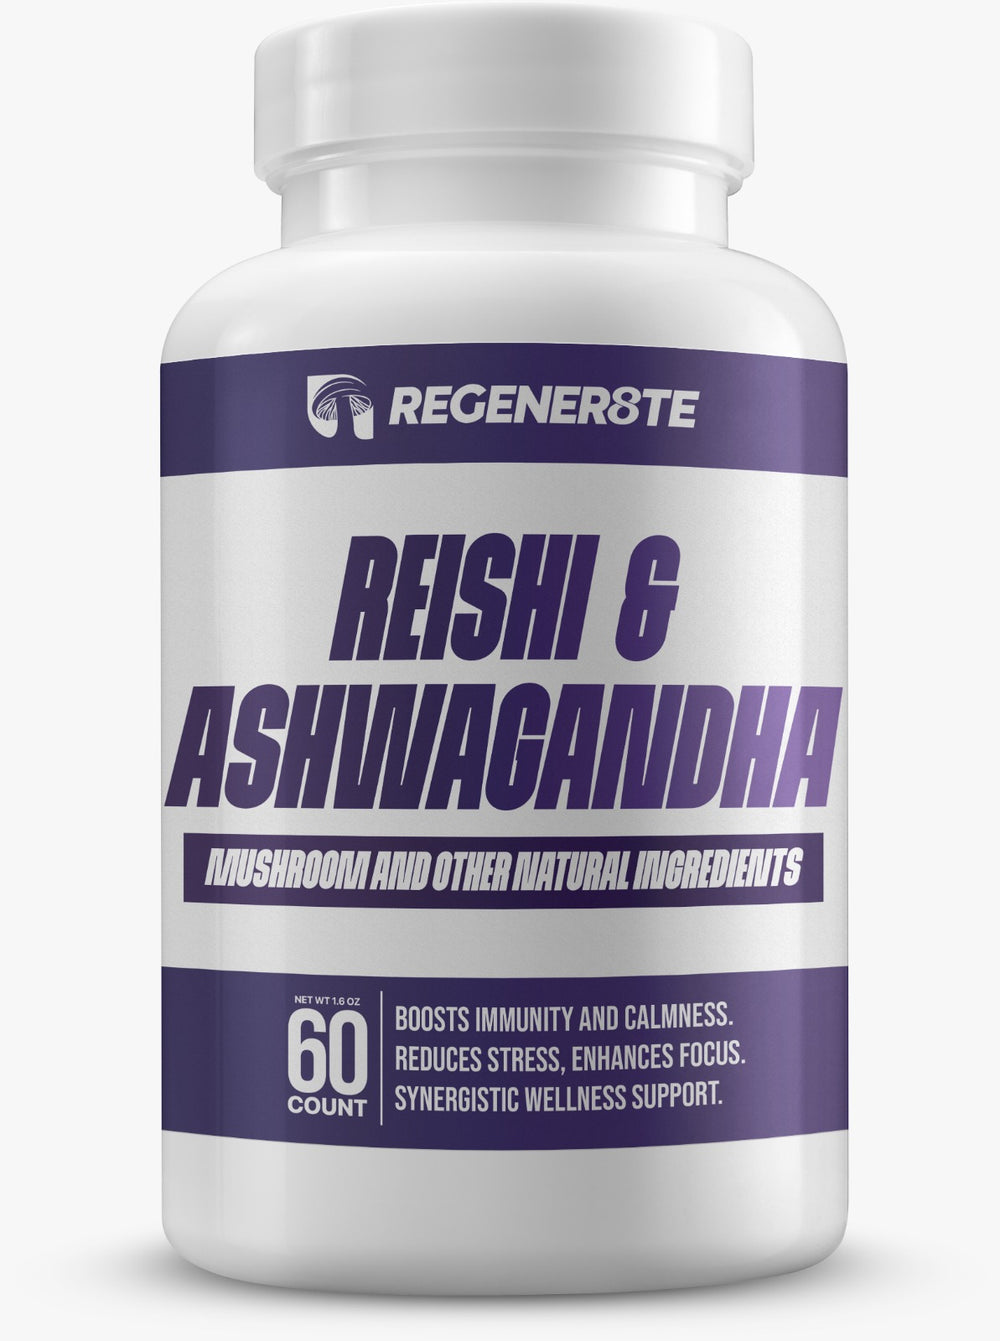 Calm - Reishi Mushroom Extract 600MG + Ashwagandha Extract 400MG